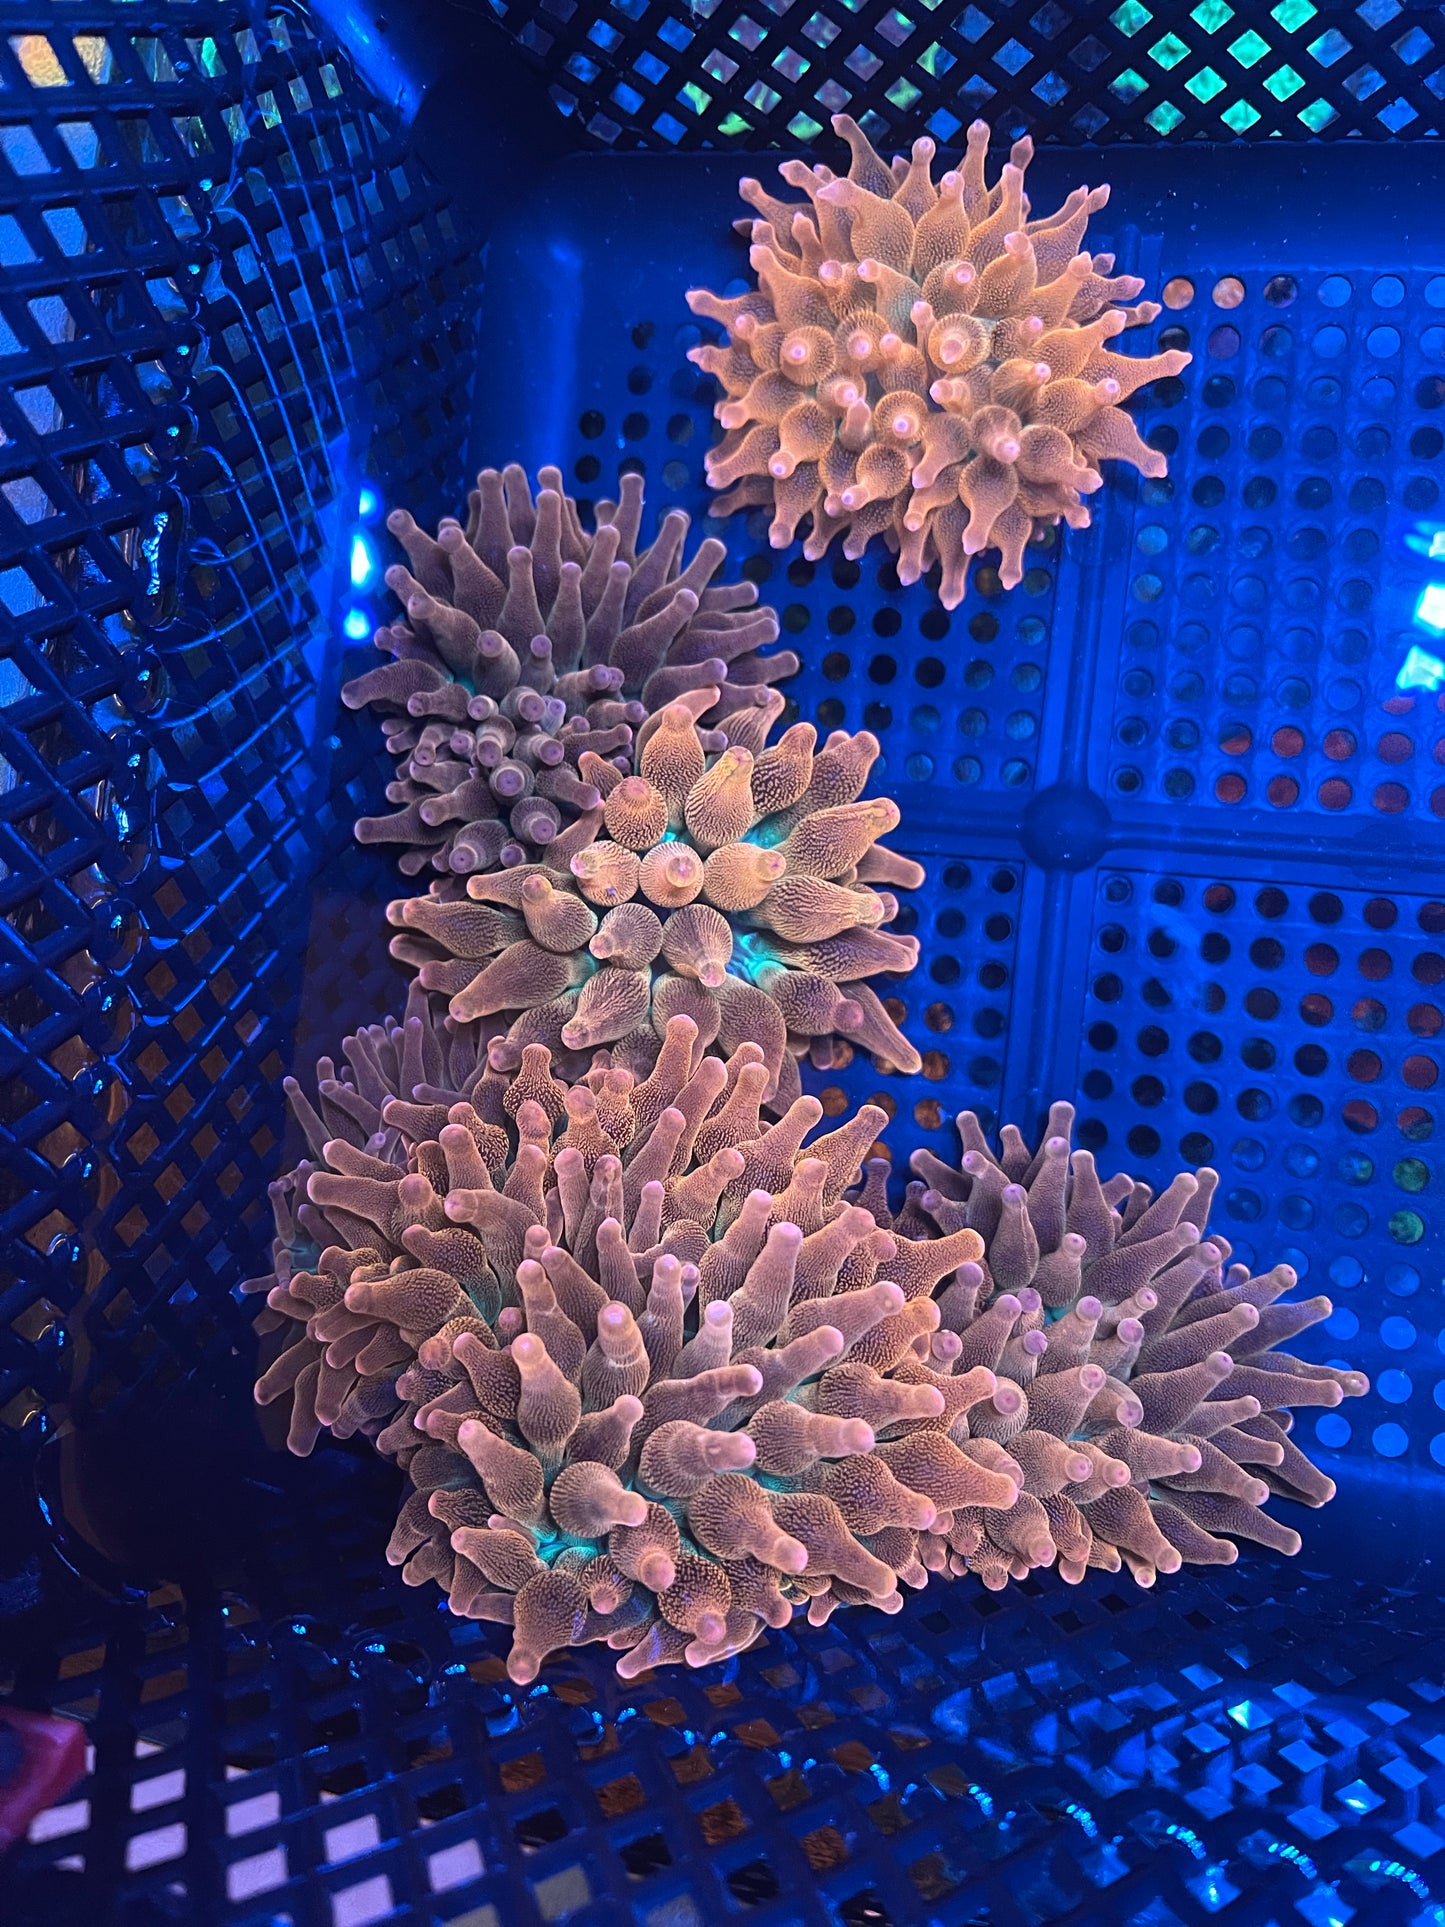 rainbow bubble tip anemone